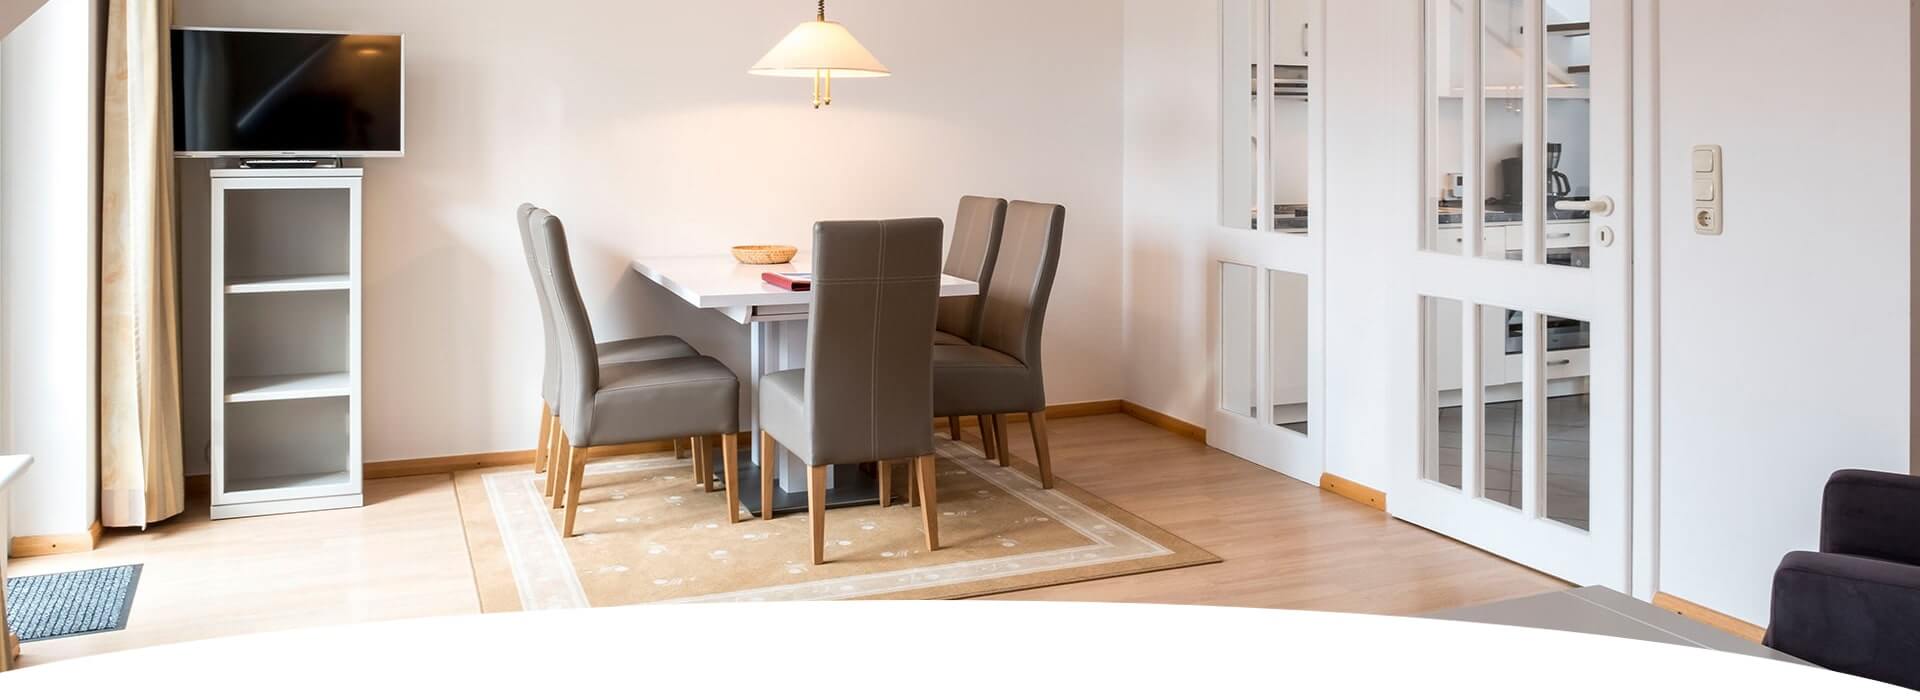 Hotel Hohe Wacht Appartment Wohnzimmer mit großem Tisch und Stühlen